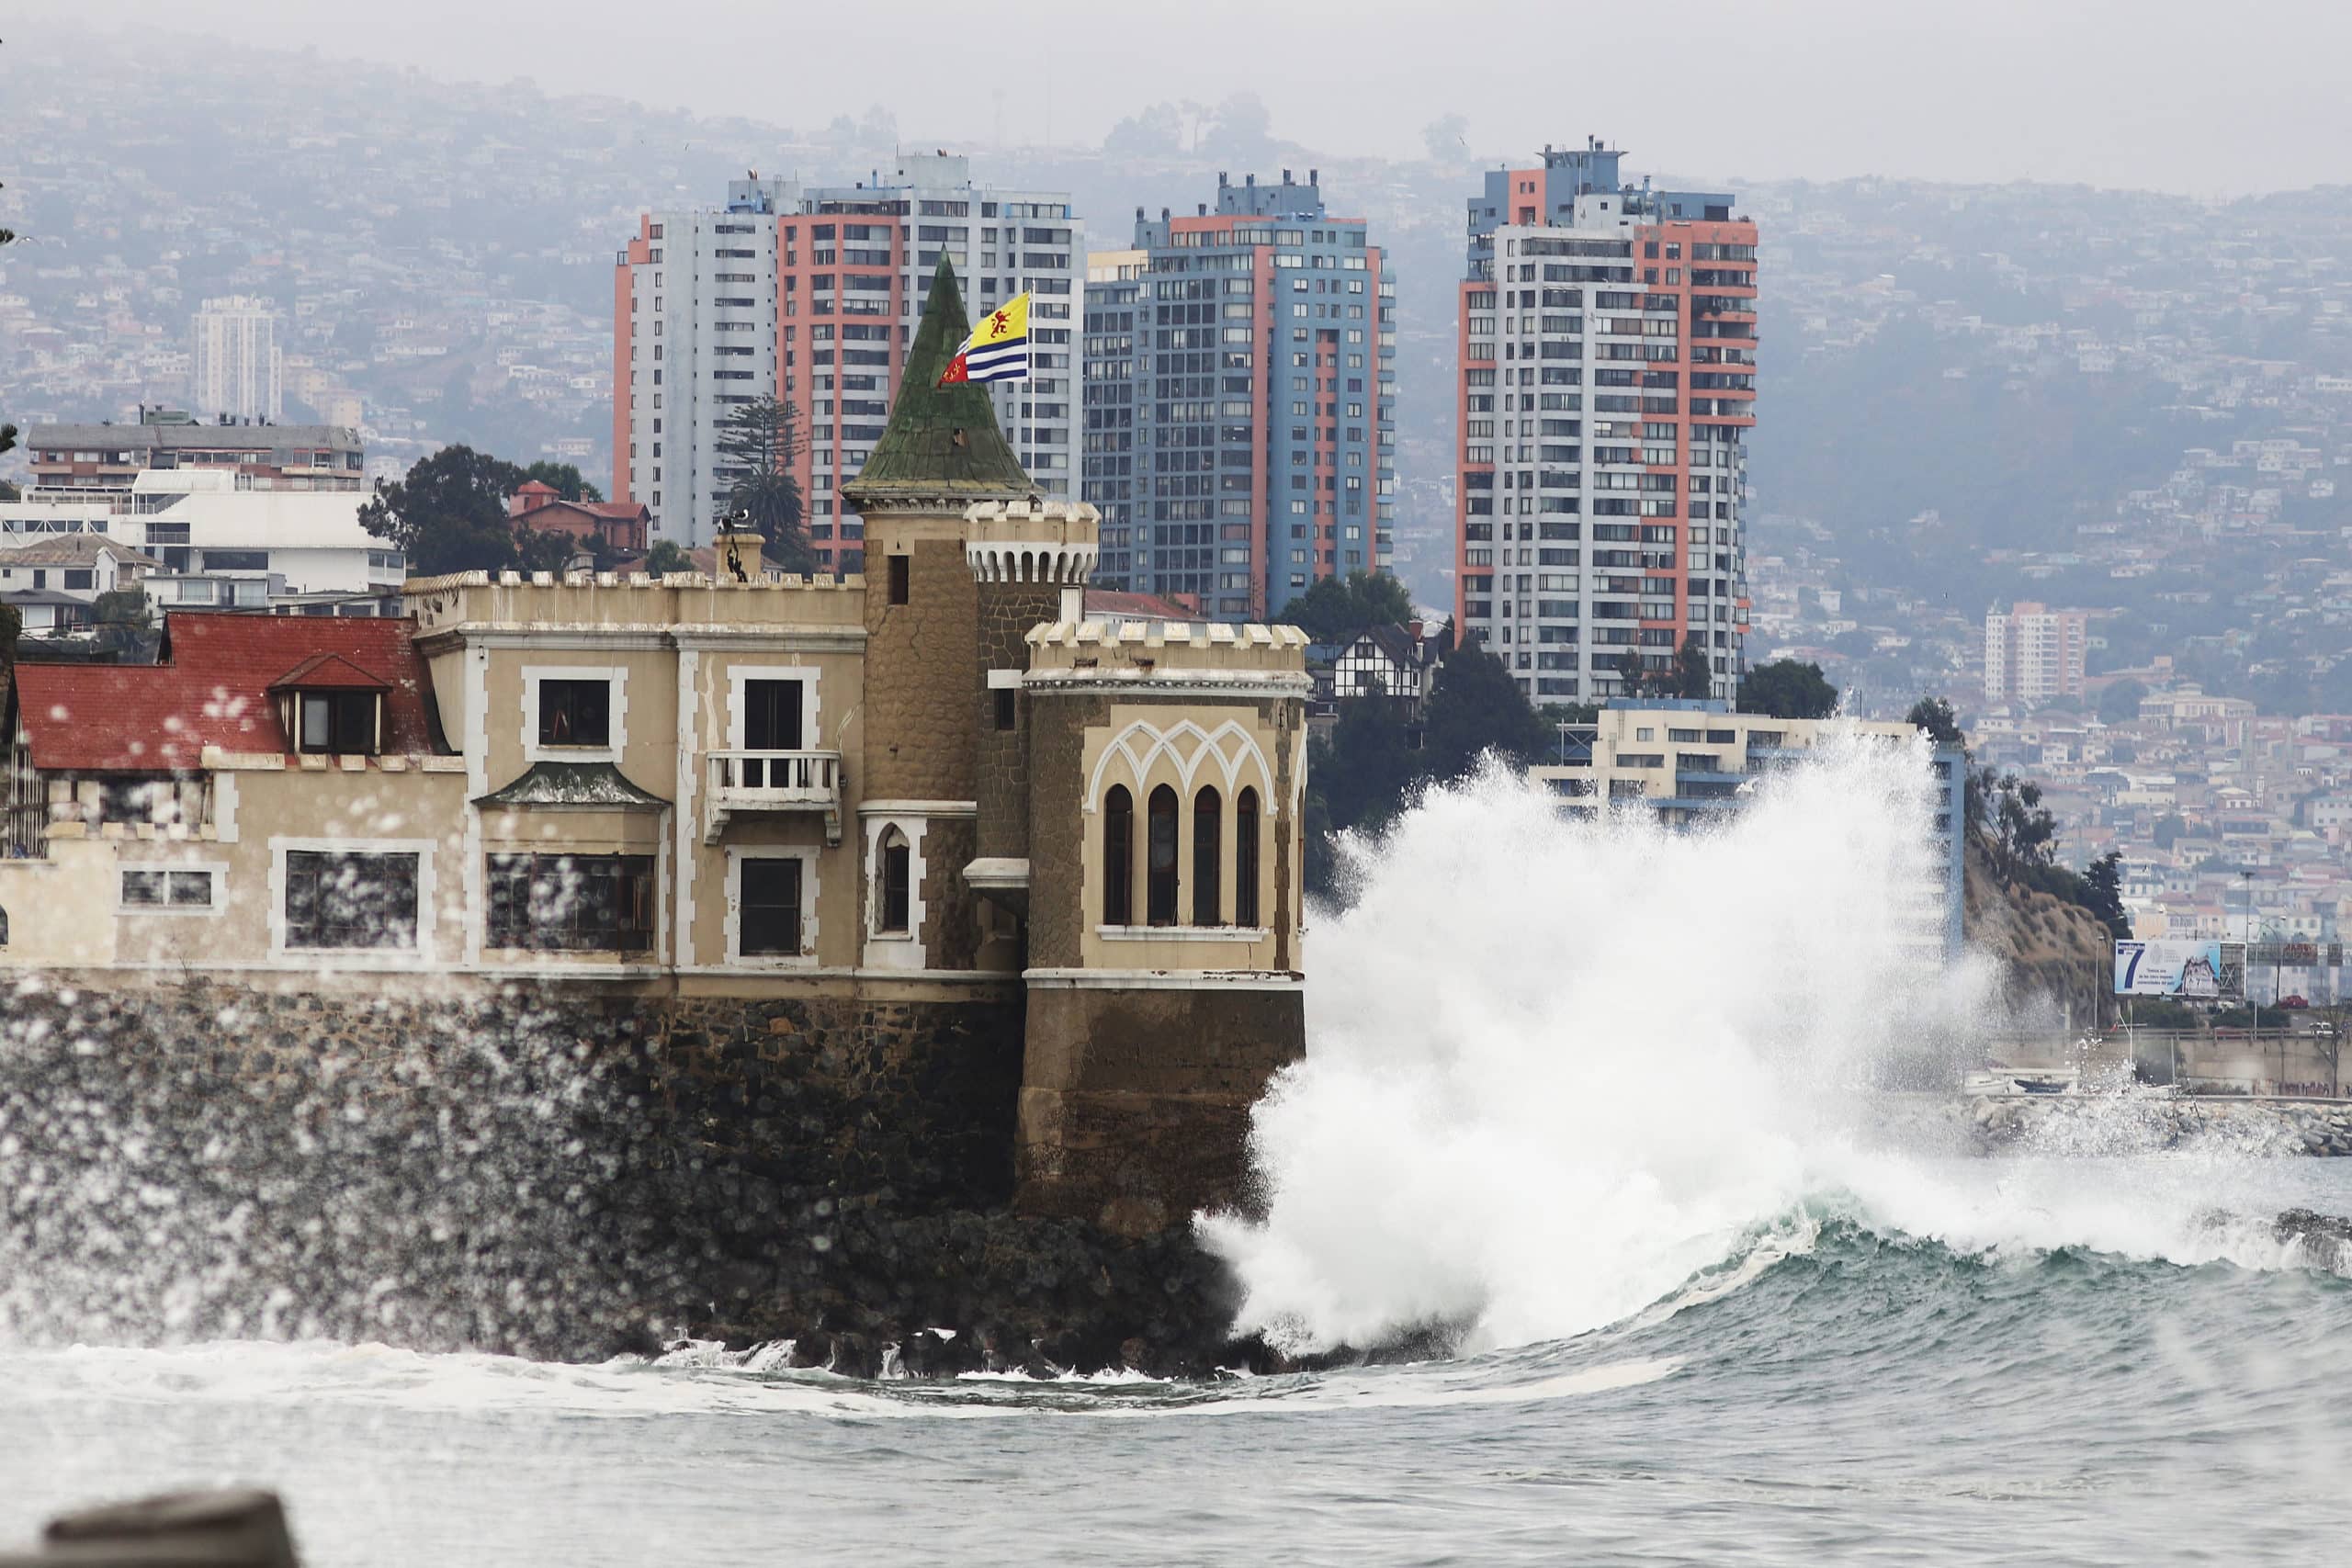 ¡Alerta máxima en la costa de Valparaíso! Marejadas gigantes y vientos huracanados azotarán la región